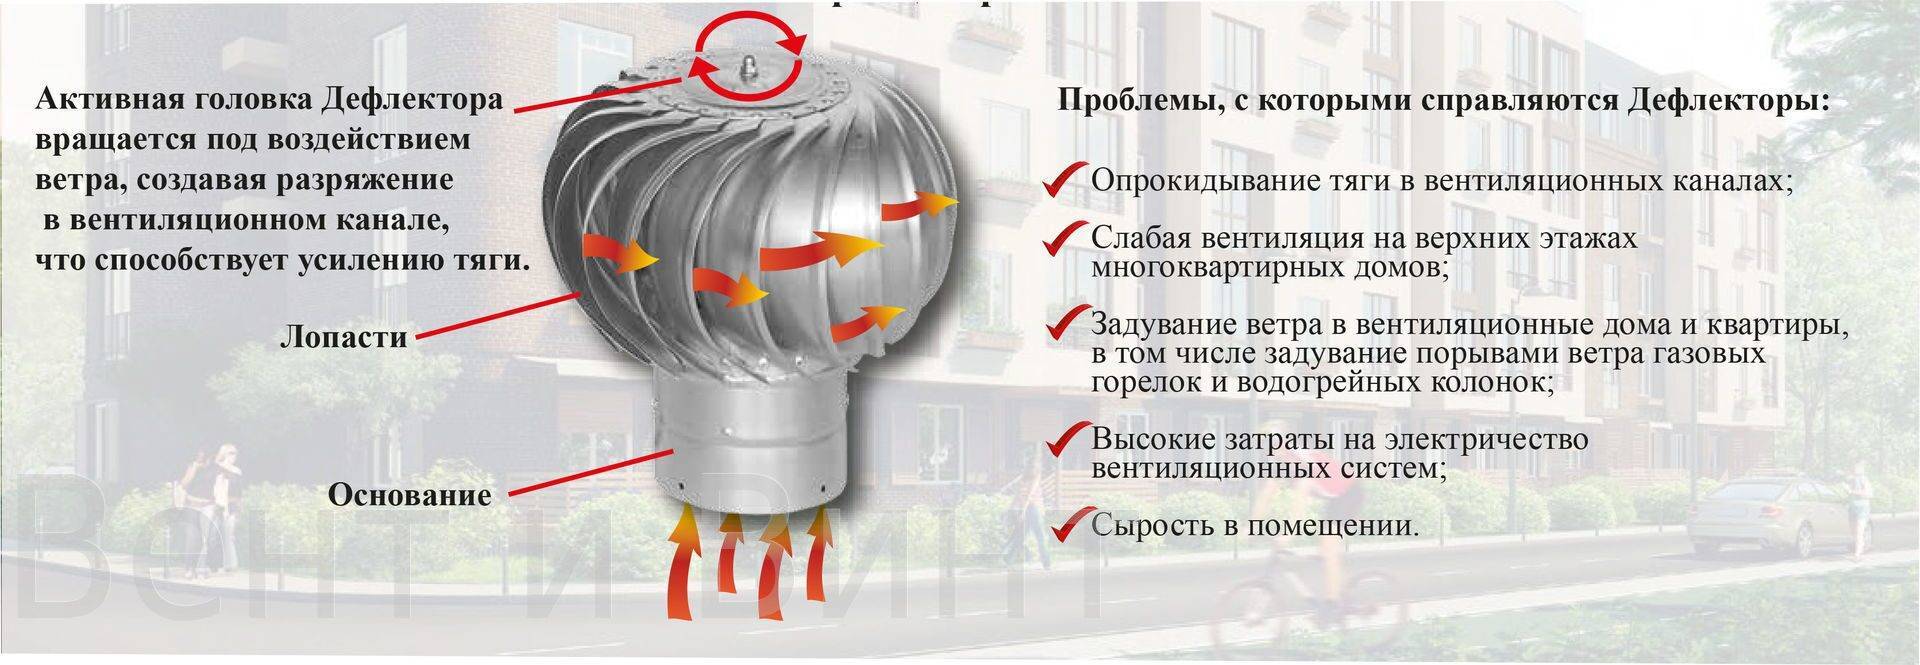 Делаем дефлектор на дымоход: увеличиваем тягу, спасаемся от ветра